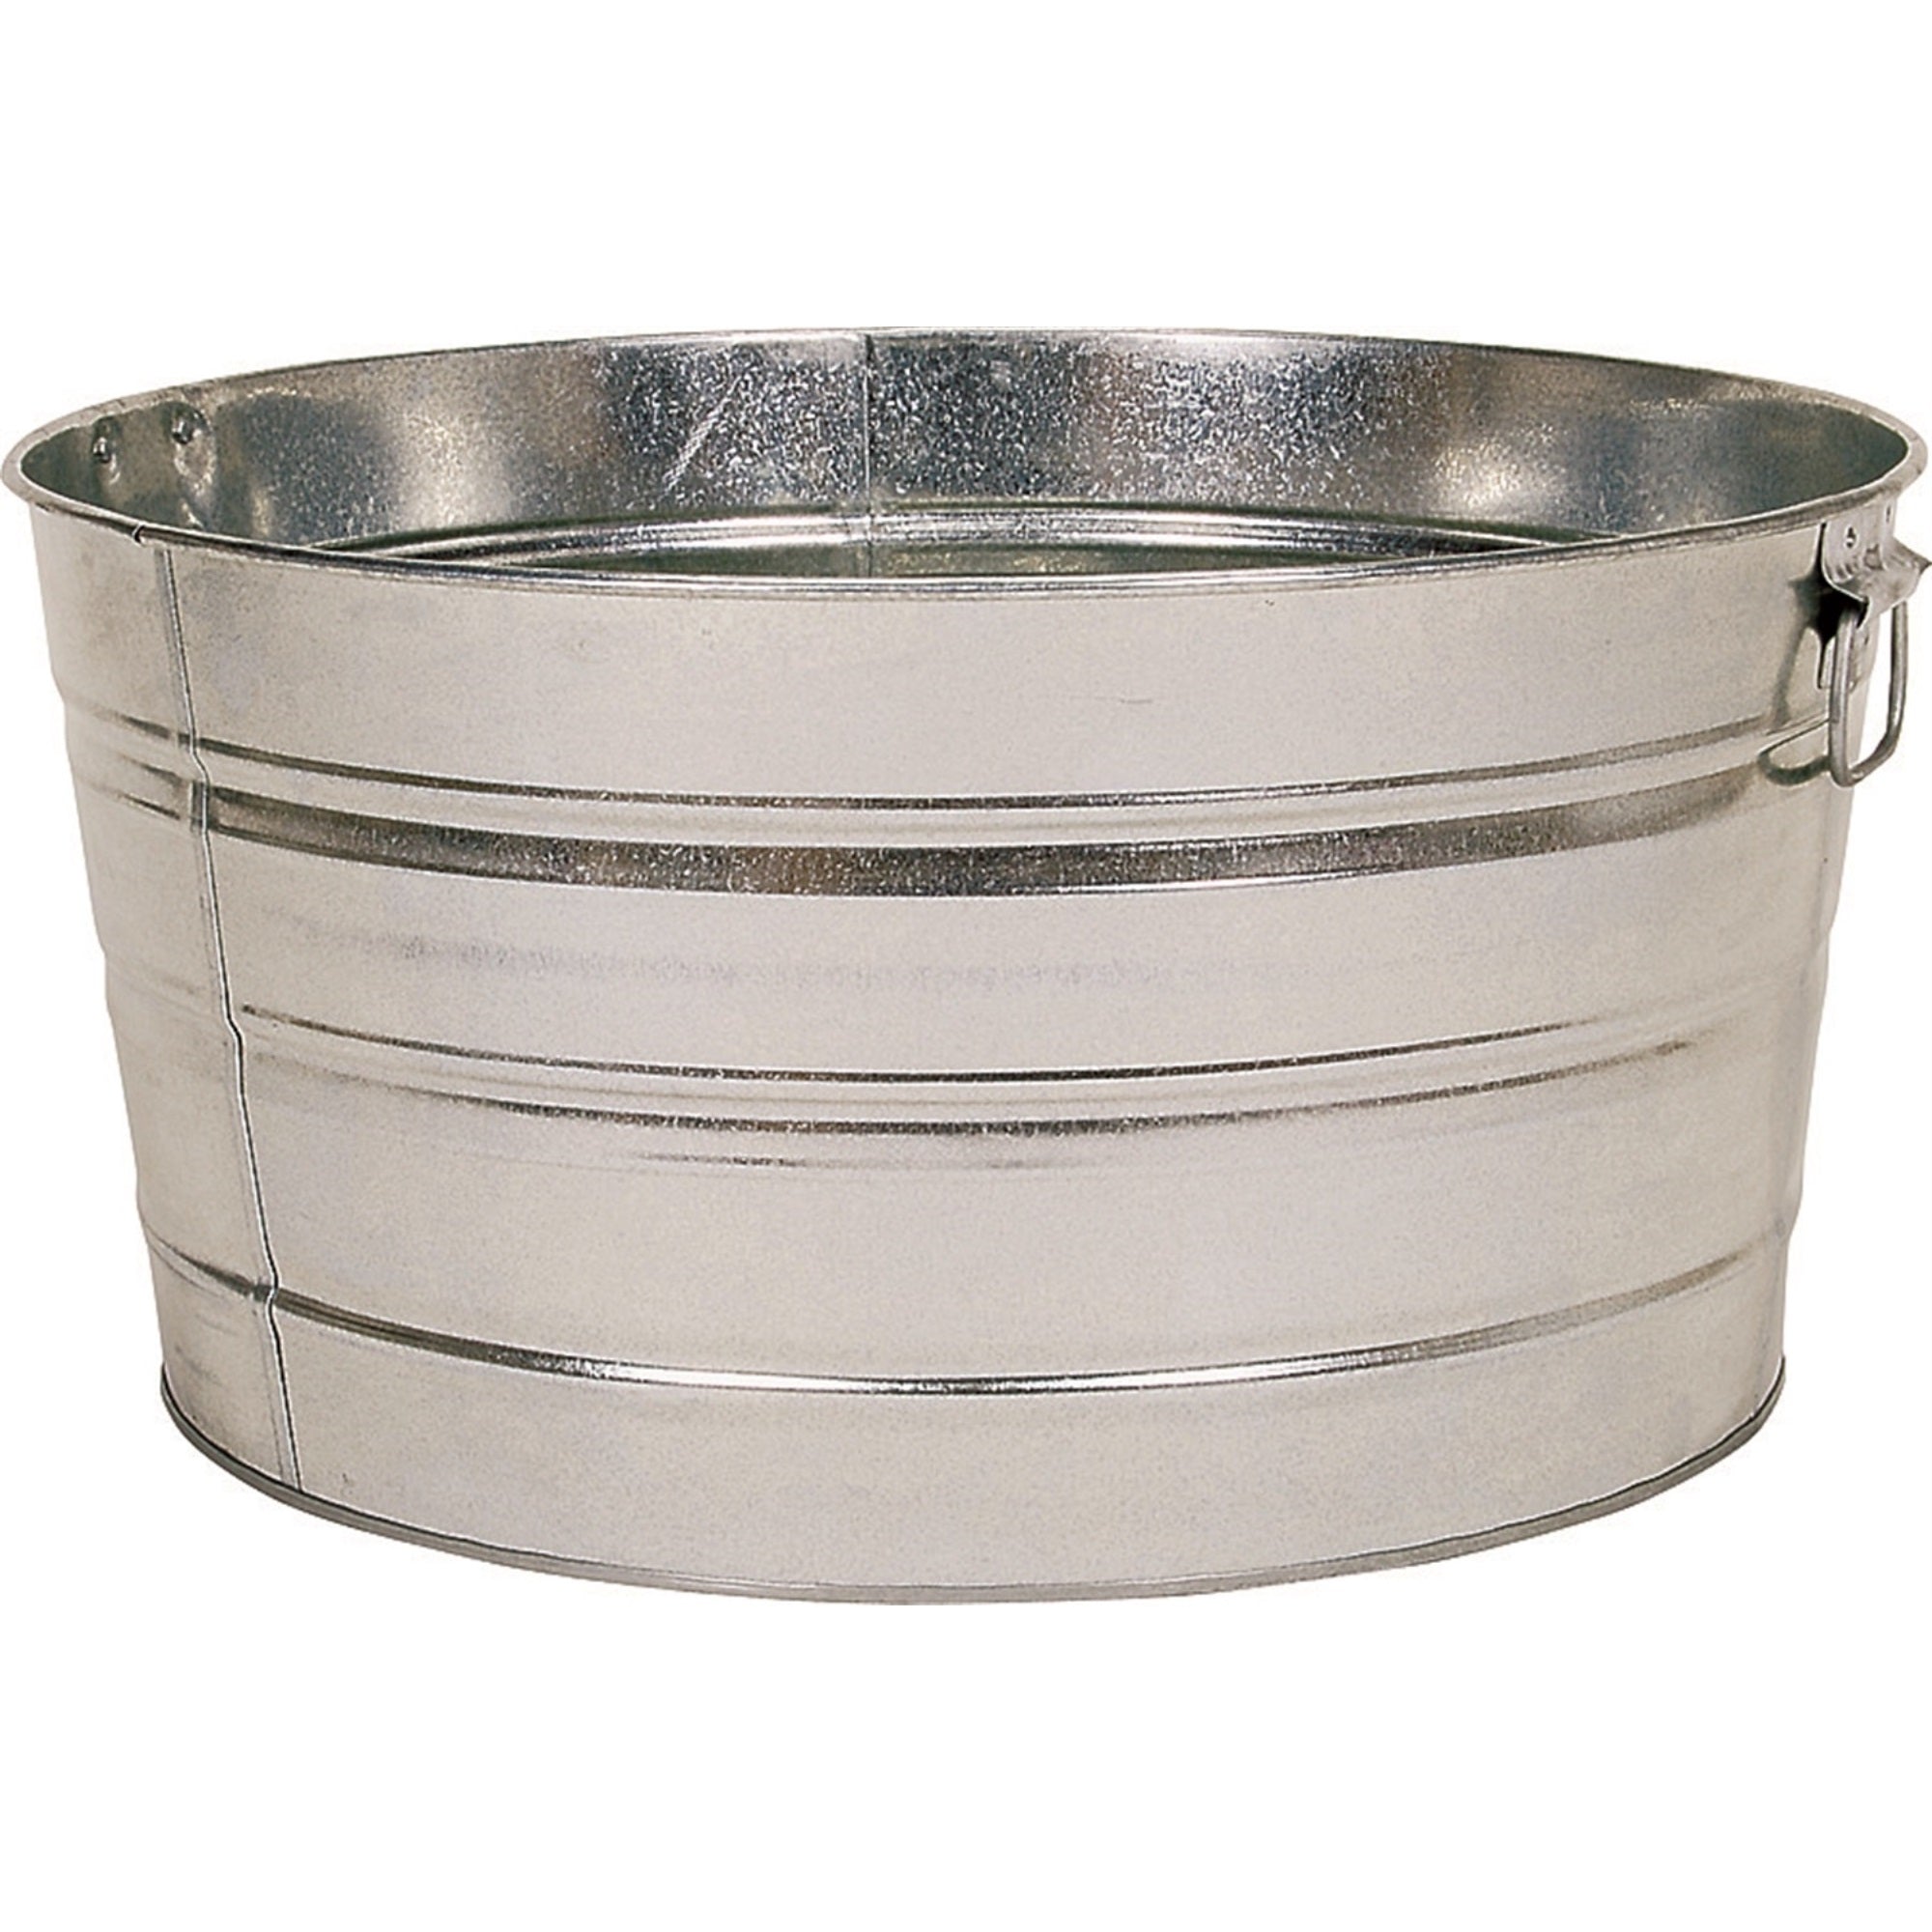 Behrens Multi-purpose Round Galvanized Steel Tub, 15 Gal - Silver